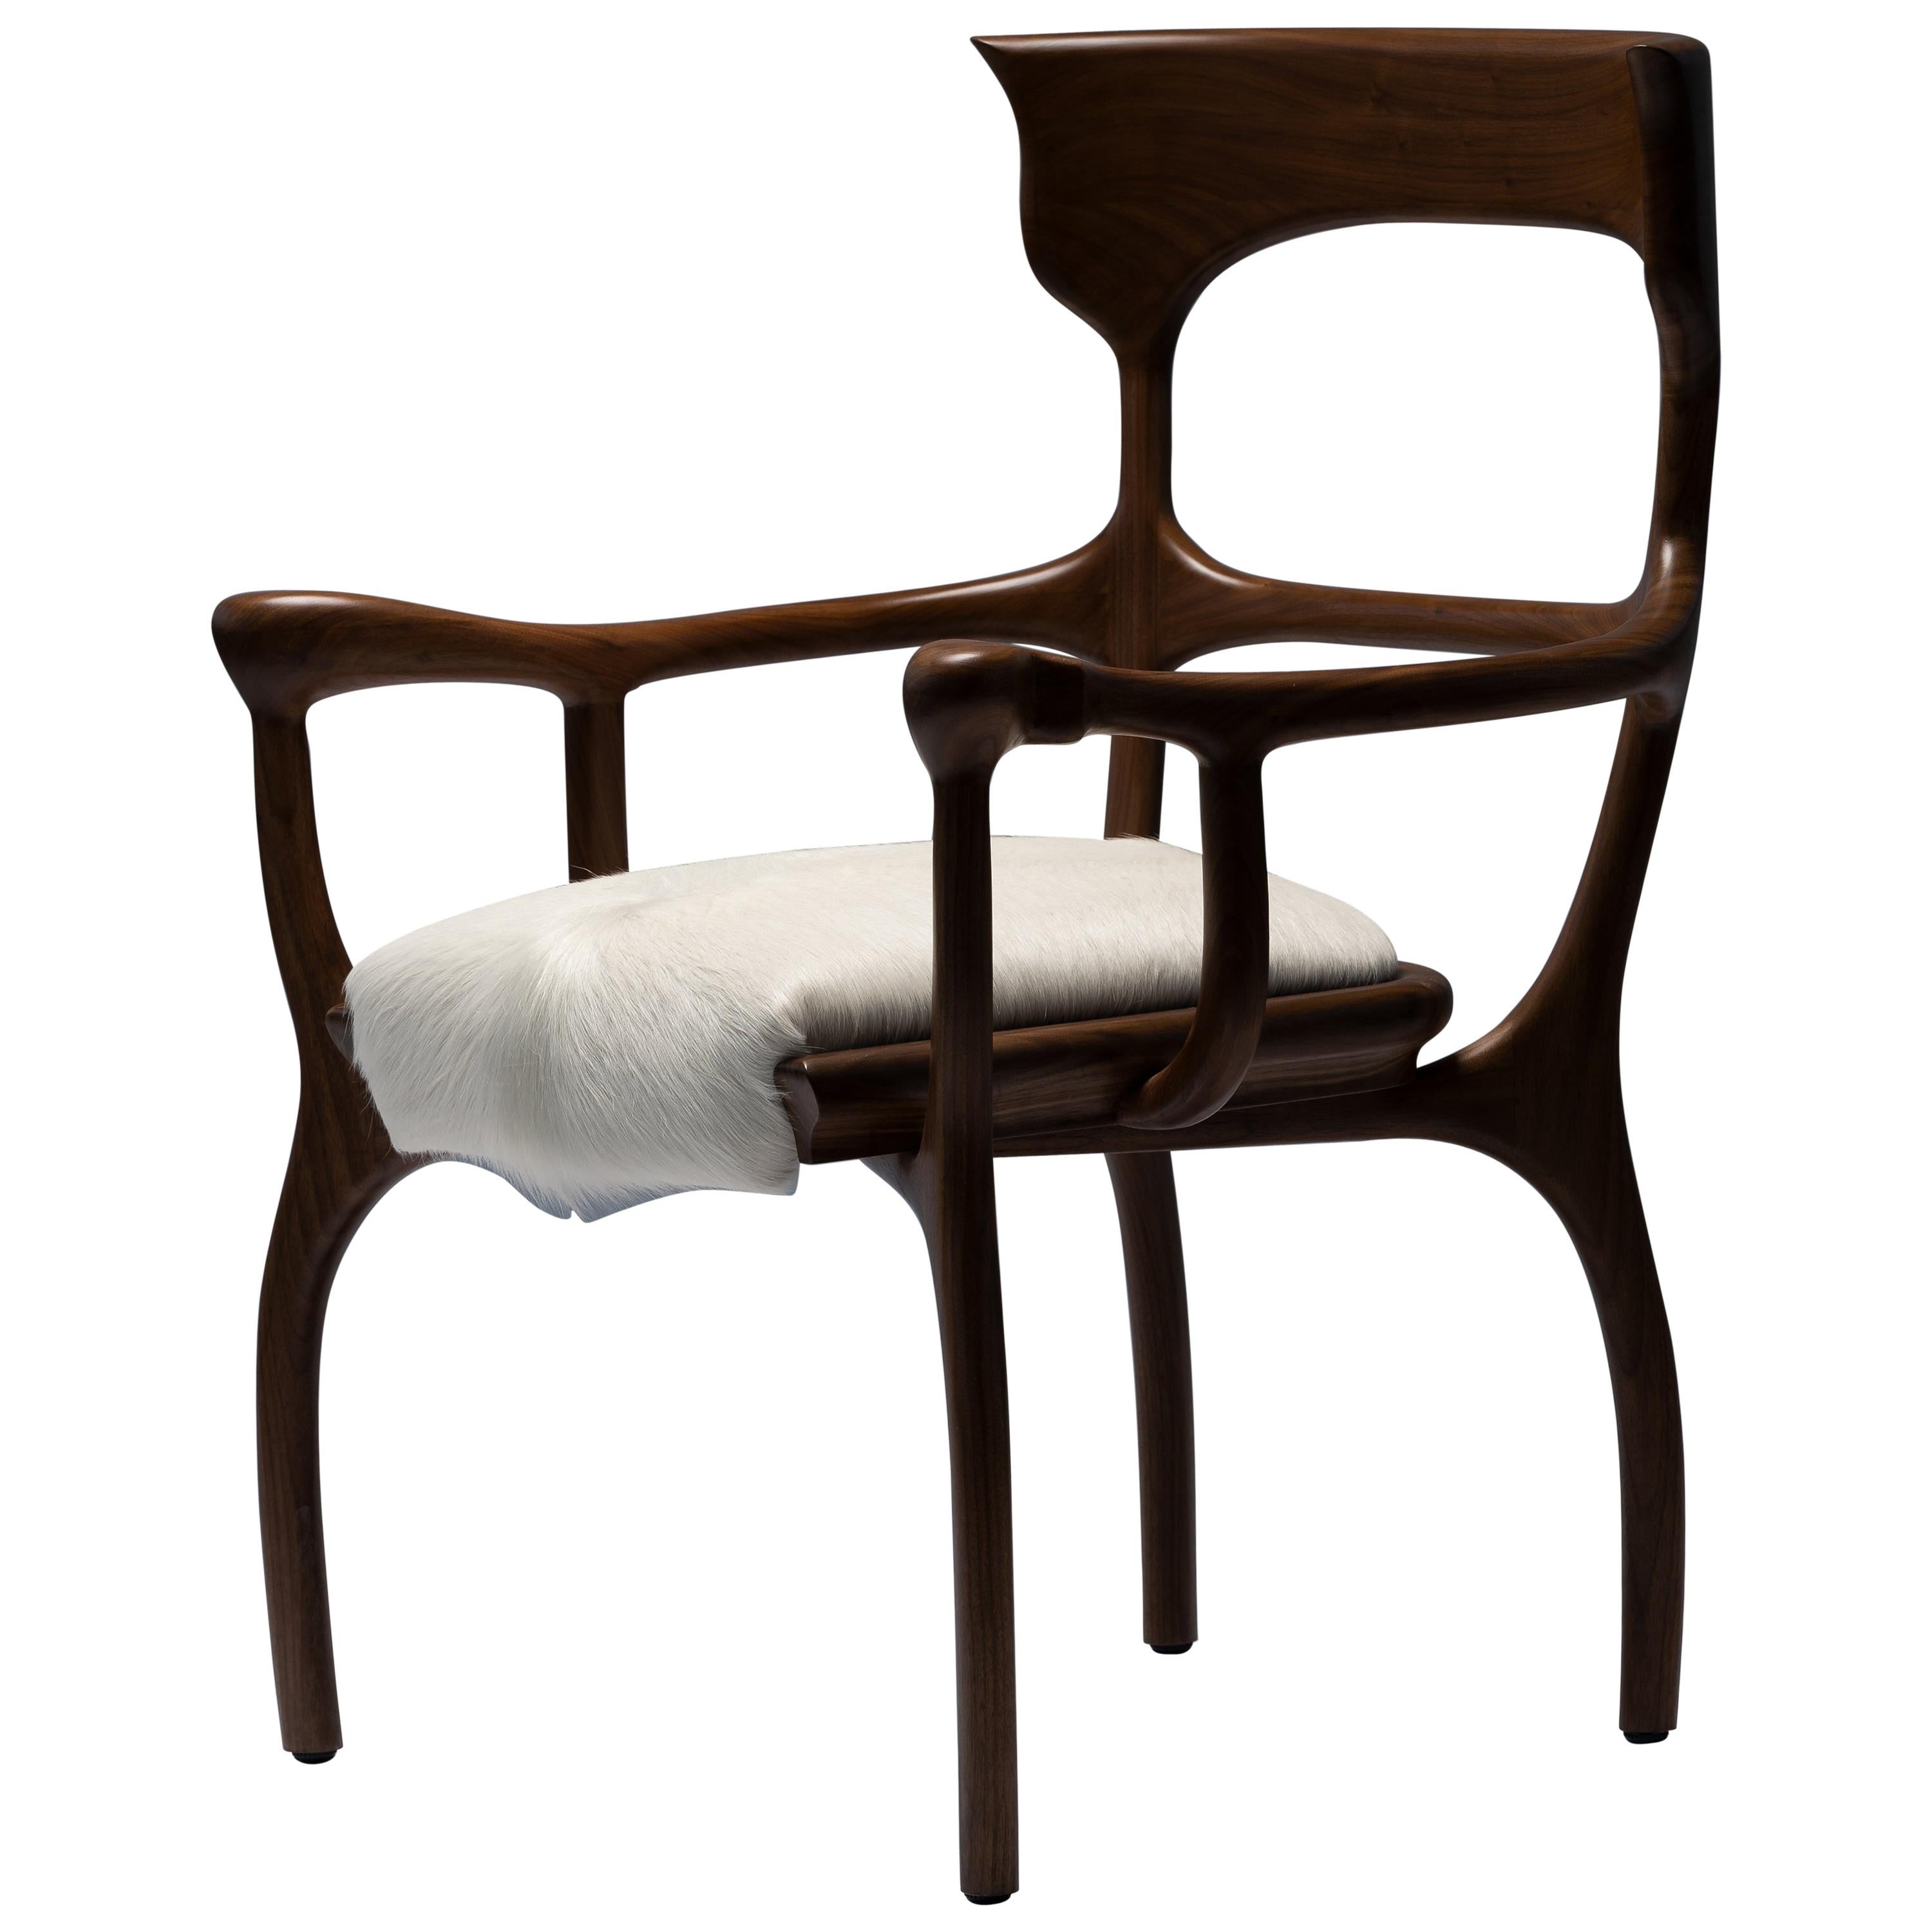 Fauteuil/chaise MARTA marron en noyer/ chêne avec assise en cuir de vache crème par Mandy Graham en vente